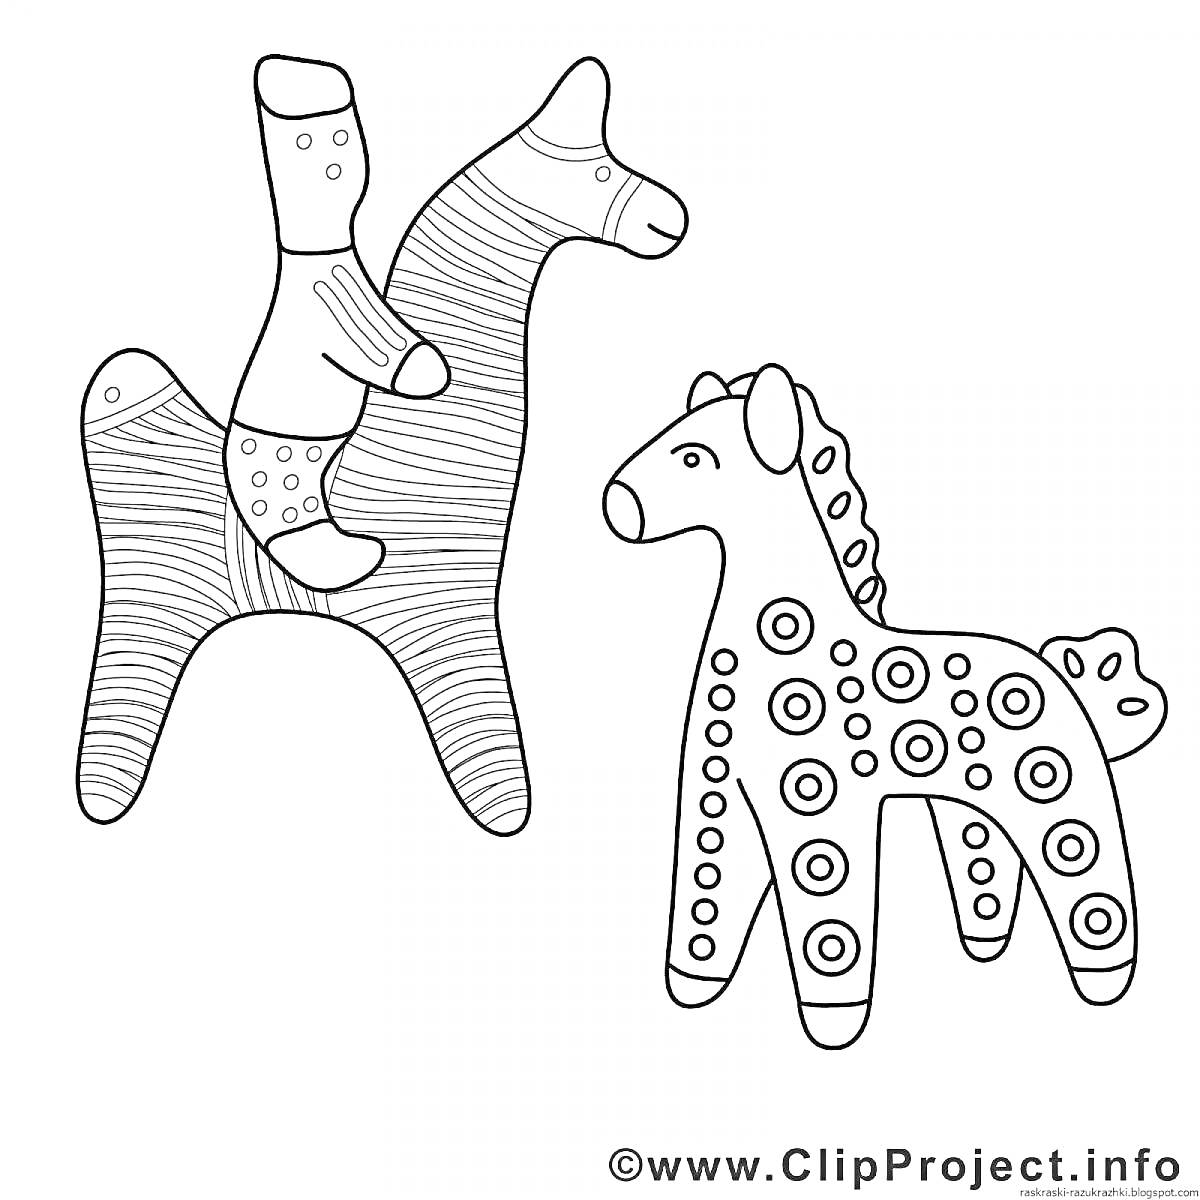 Филимоновская игрушка: всадник на лошади и пятнистая лошадка